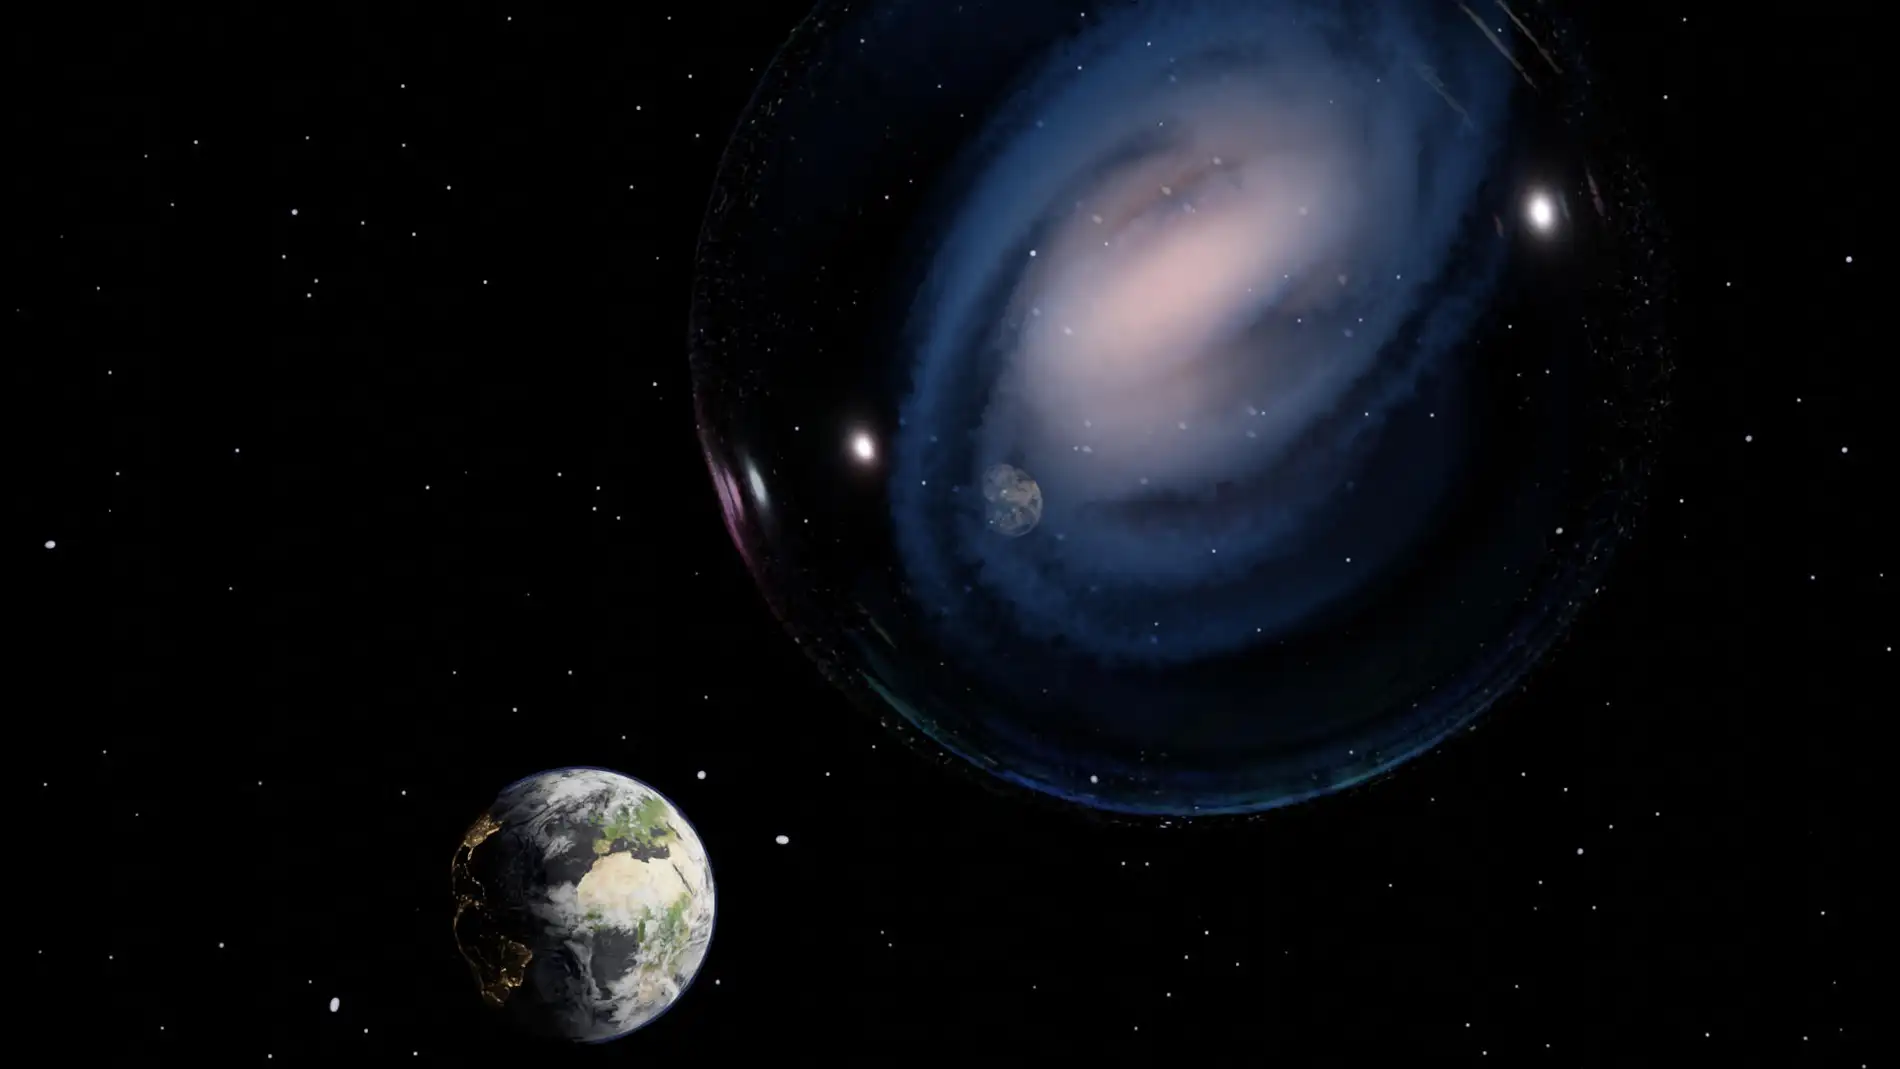 Galaxia espiral hallada gracias al telescopio espacial James Webb.